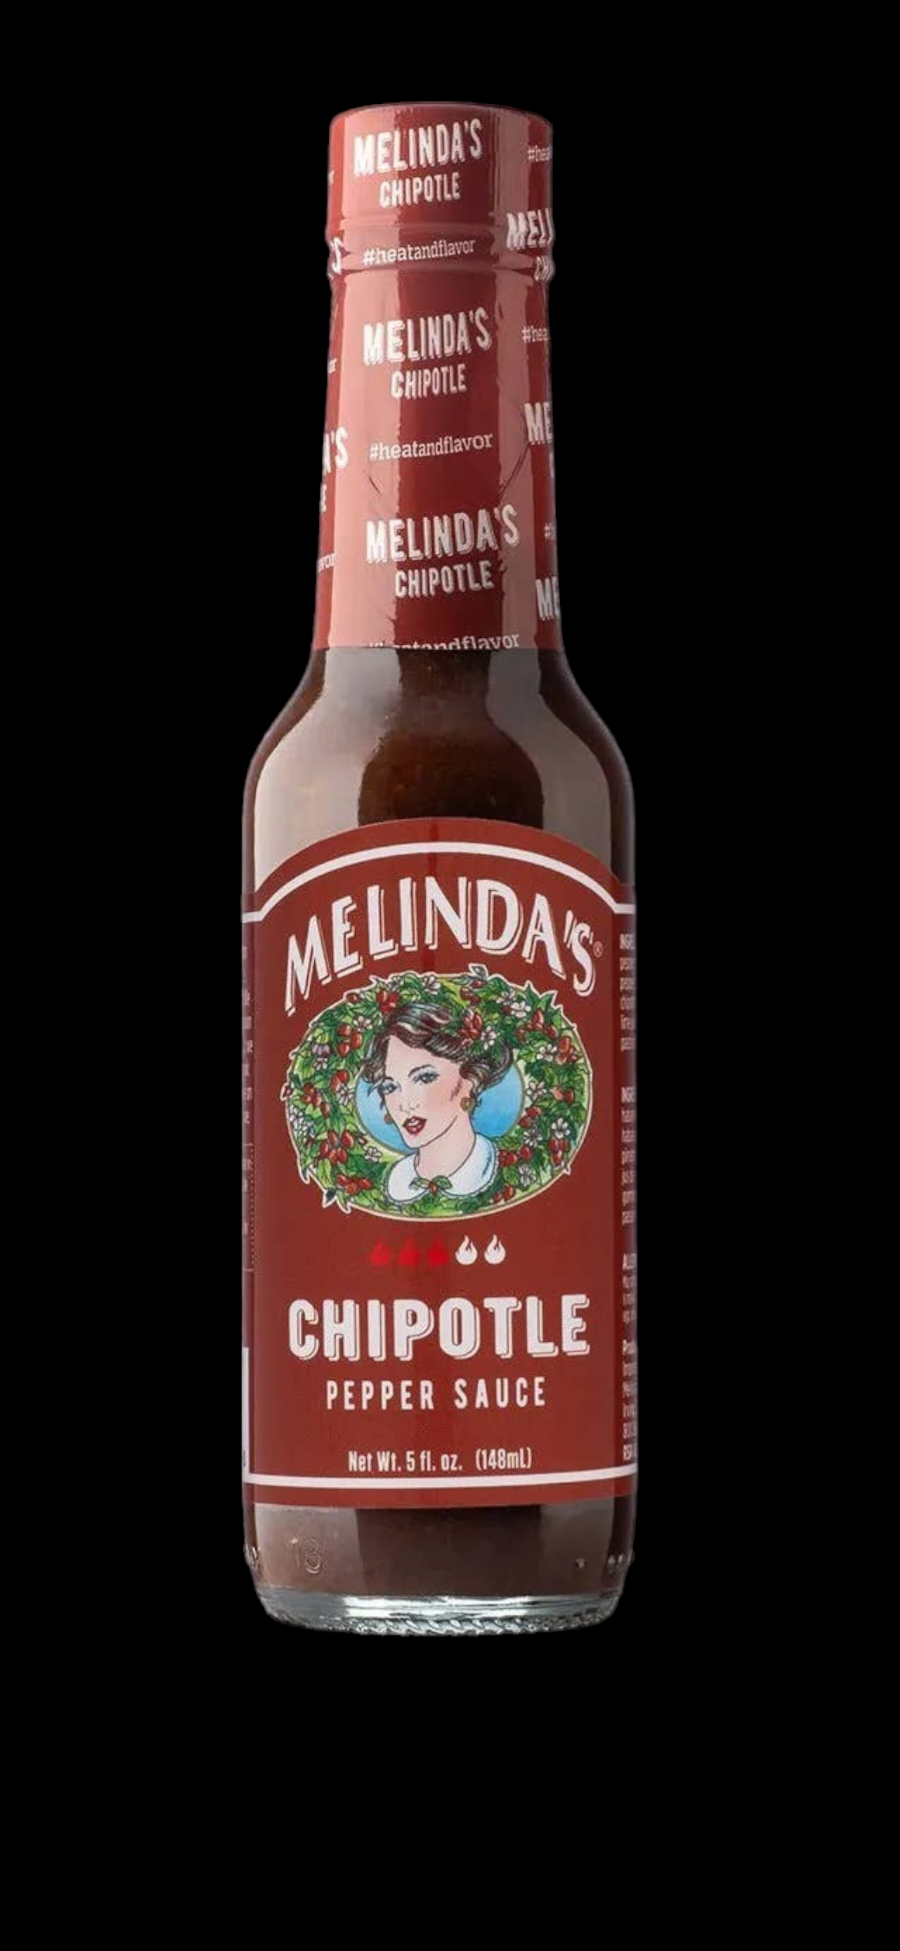 Melinda's Gourmet Hot Sauces